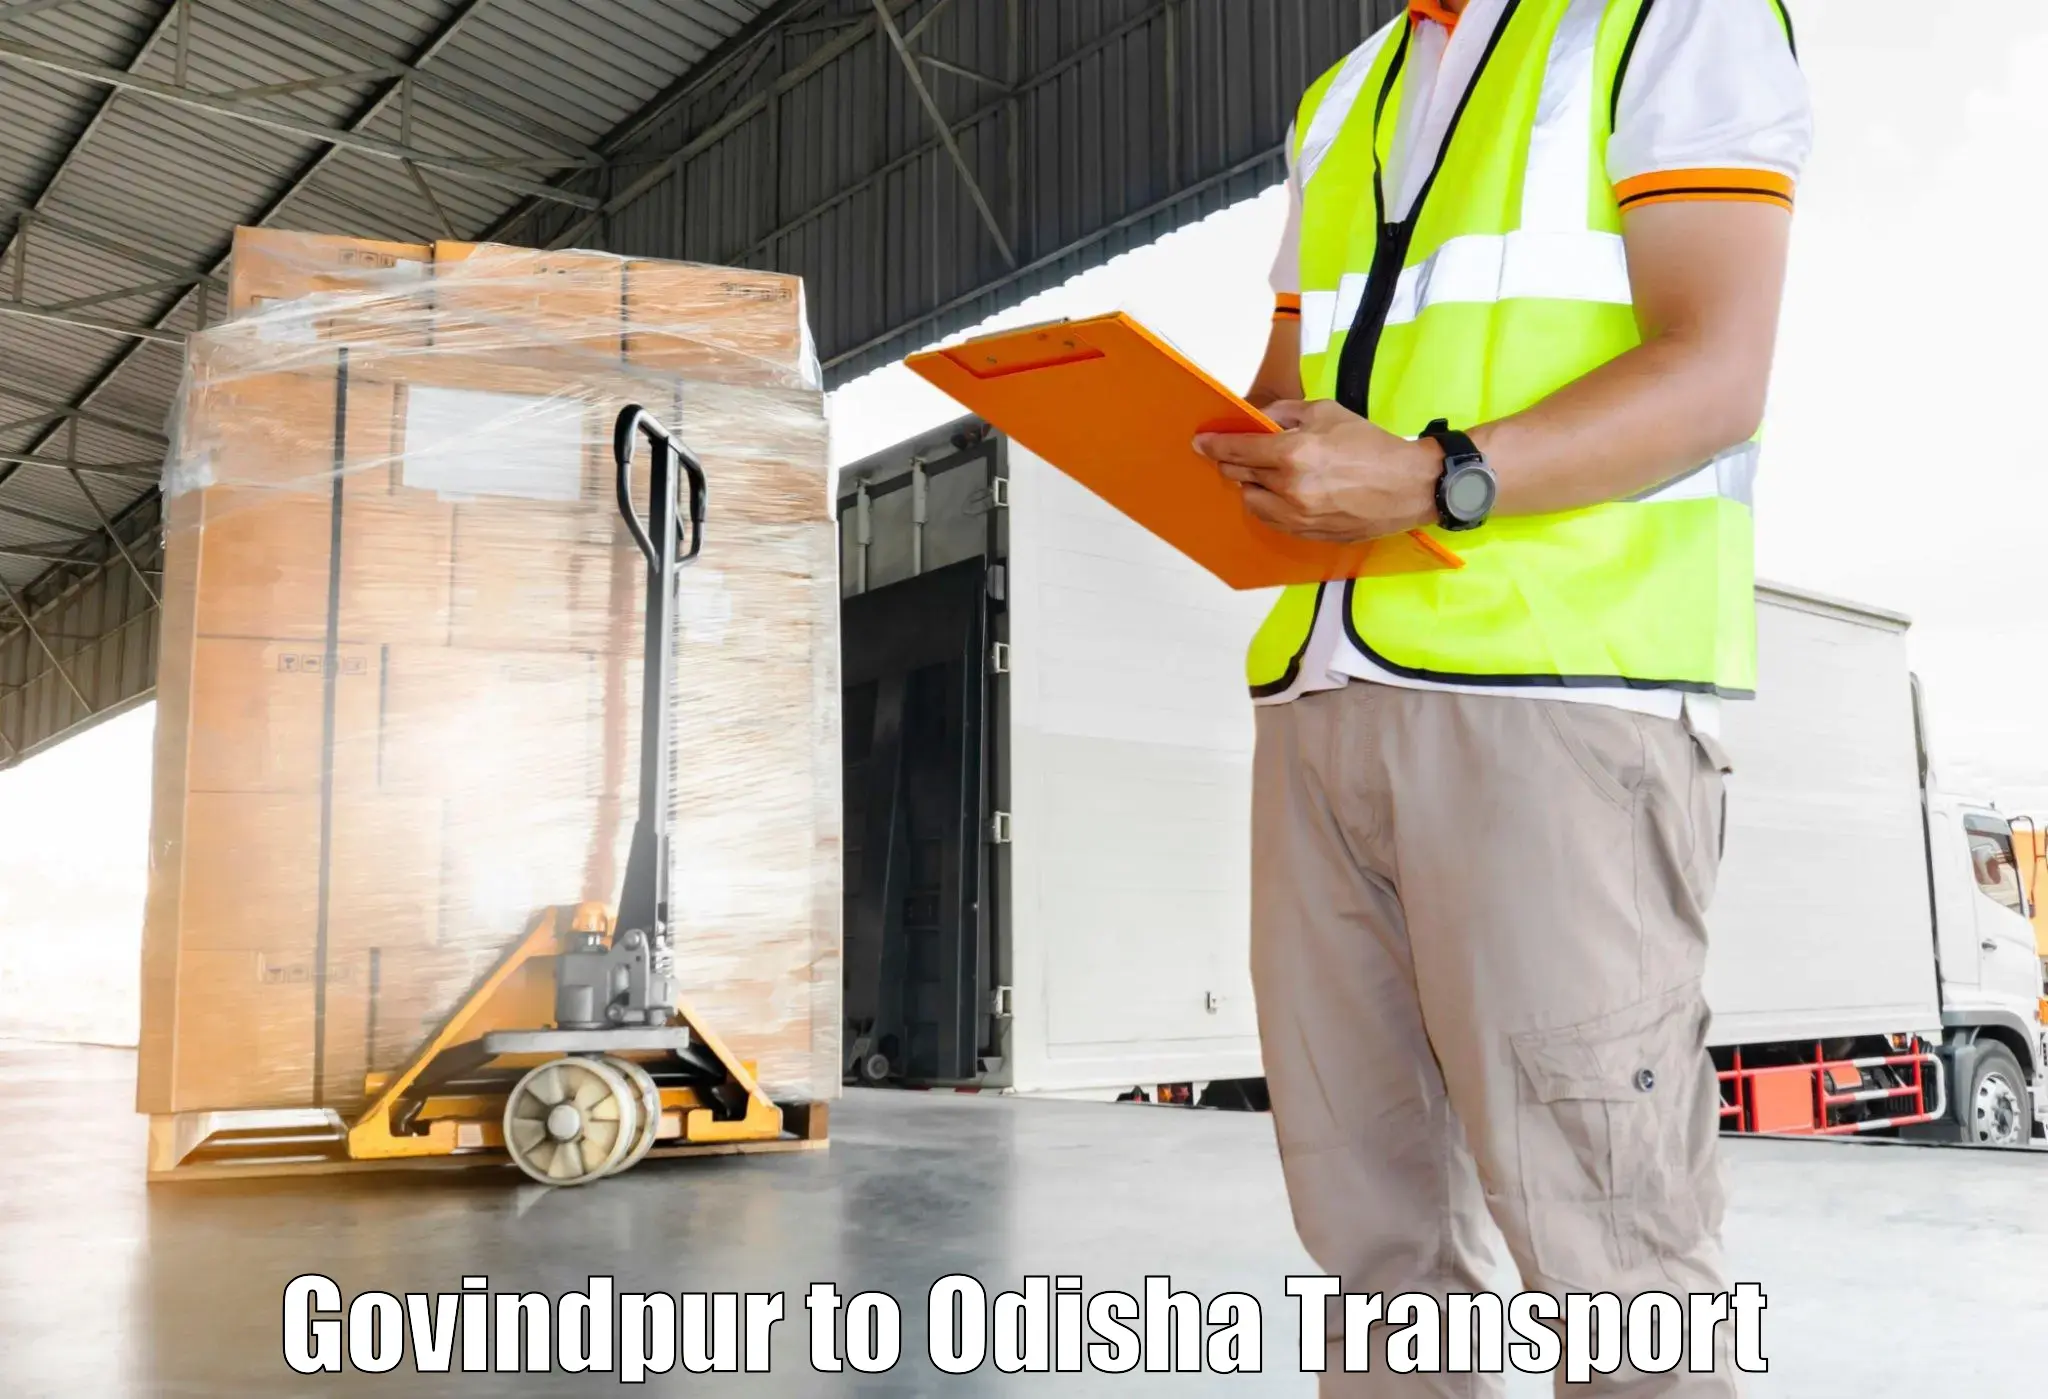 Furniture transport service Govindpur to Malkangiri